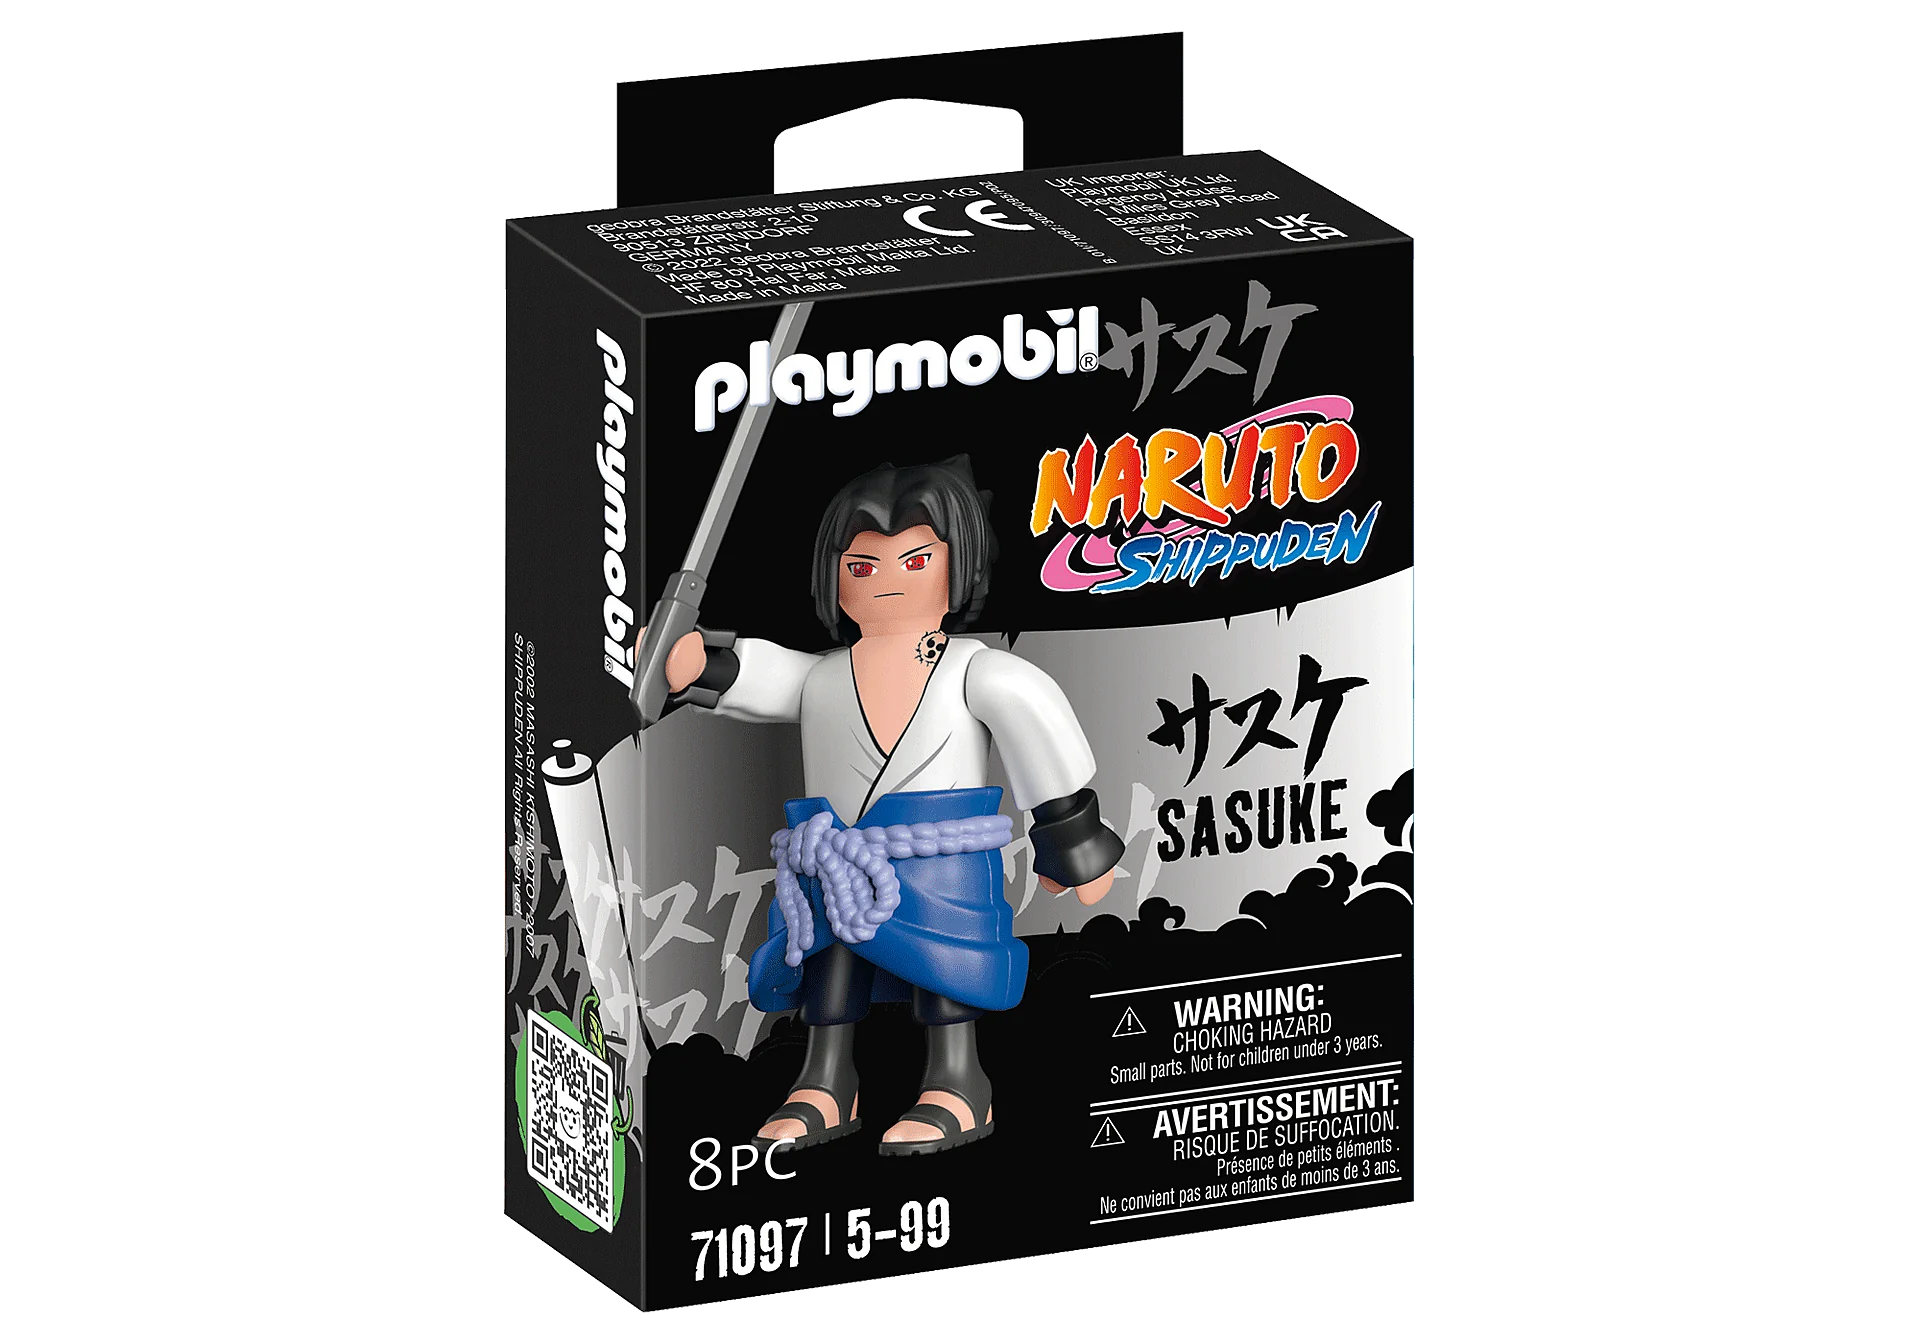 Playmobil Naruto Shippuden Sasuke 71097